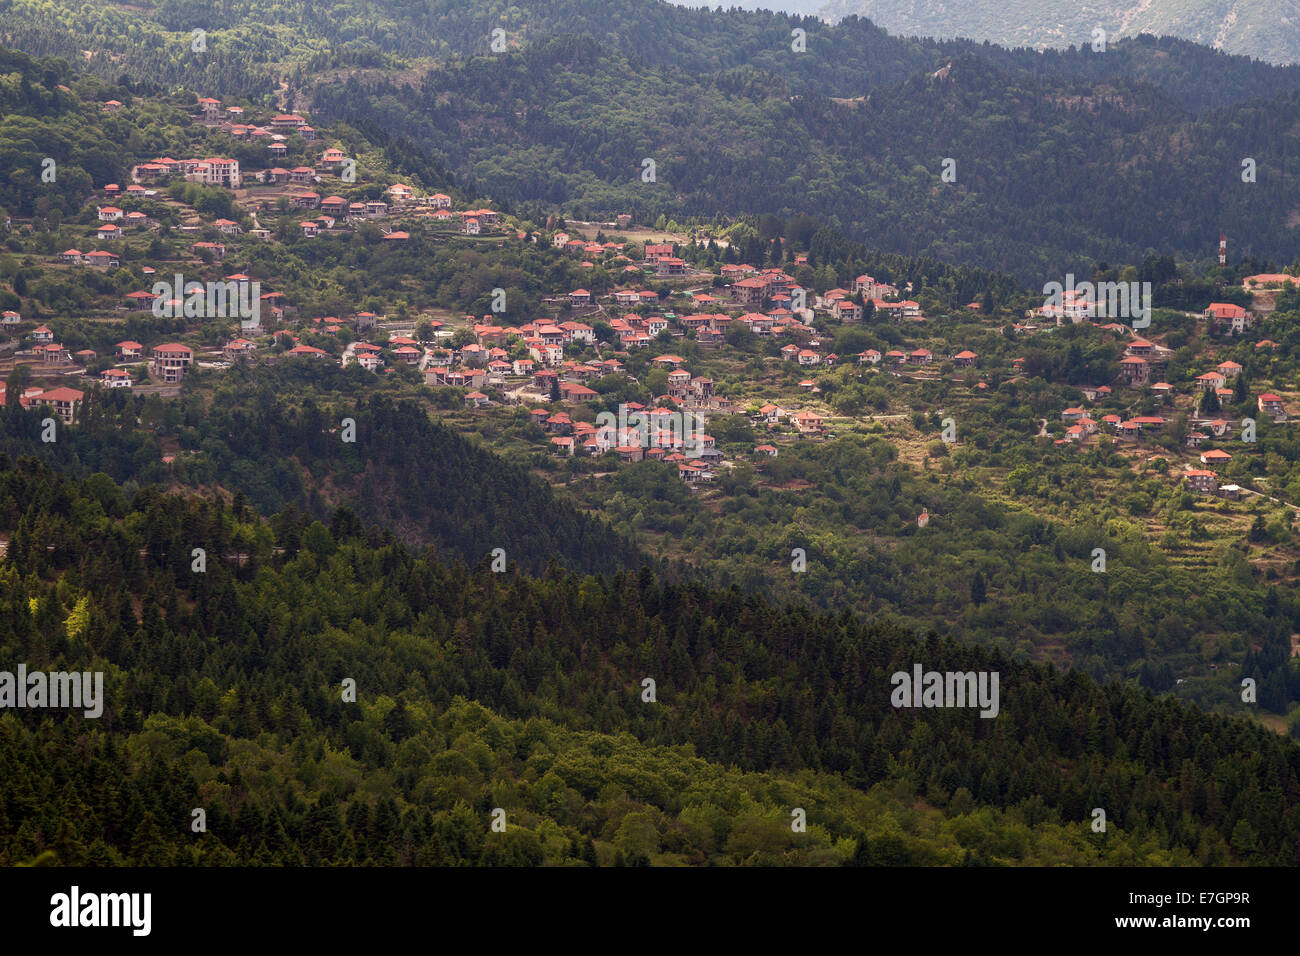 Le haut du village dans la région très boisée et montagneuse de la région montagneuse Nafpaktia (Orini Nafpaktia), en Grèce centrale Banque D'Images